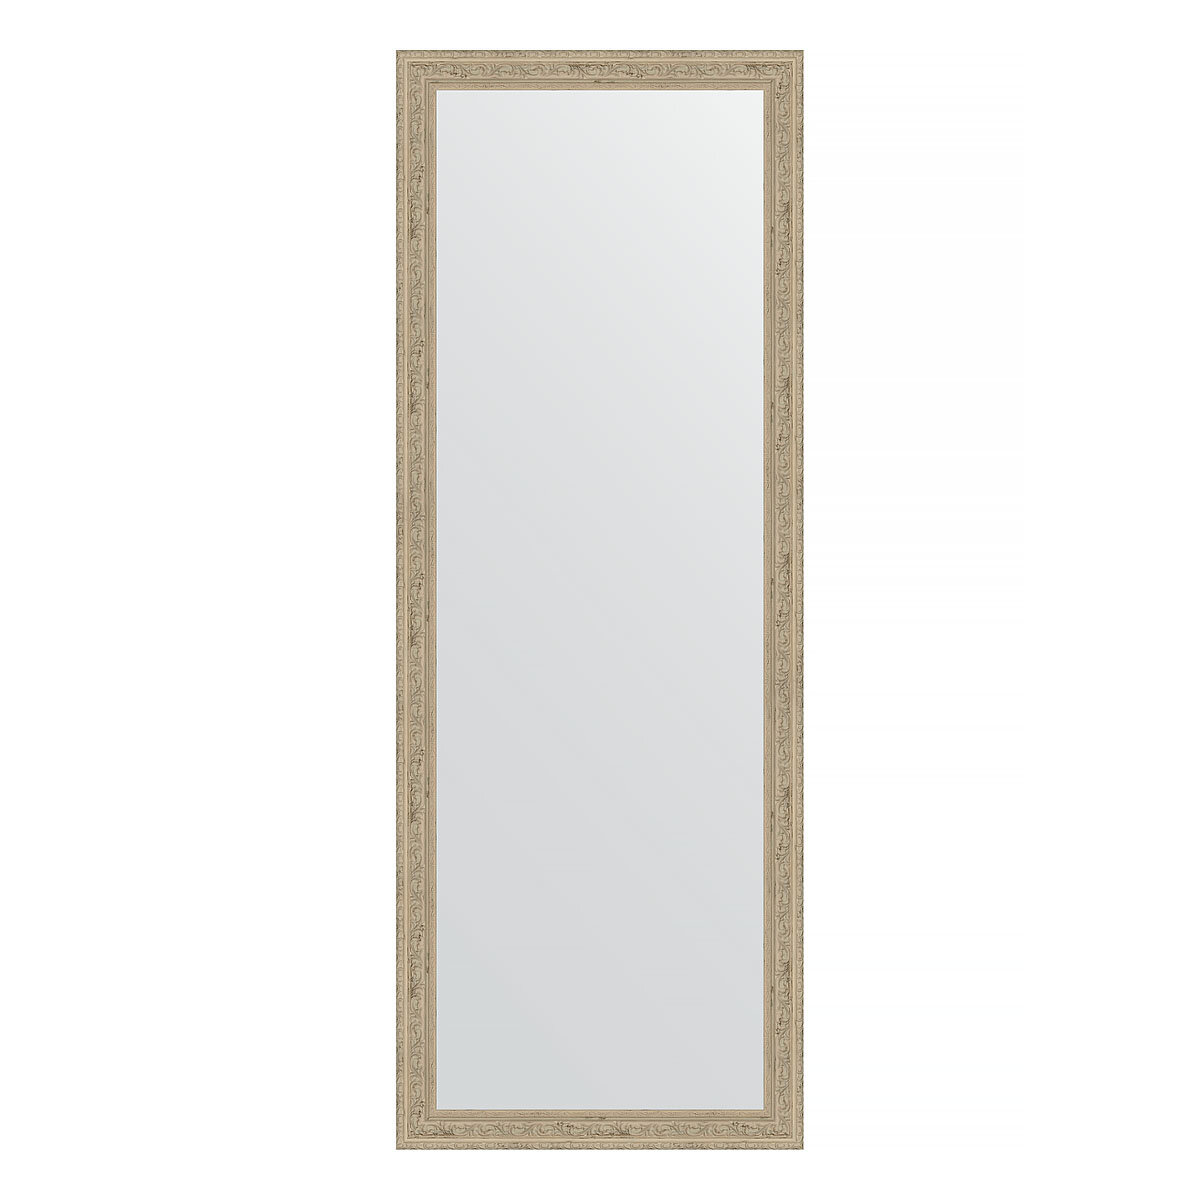 Зеркало настенное EVOFORM в багетной раме слоновая кость, 53х143 см, для гостиной, прихожей, кабинета, спальни и ванной комнаты, BY 1070